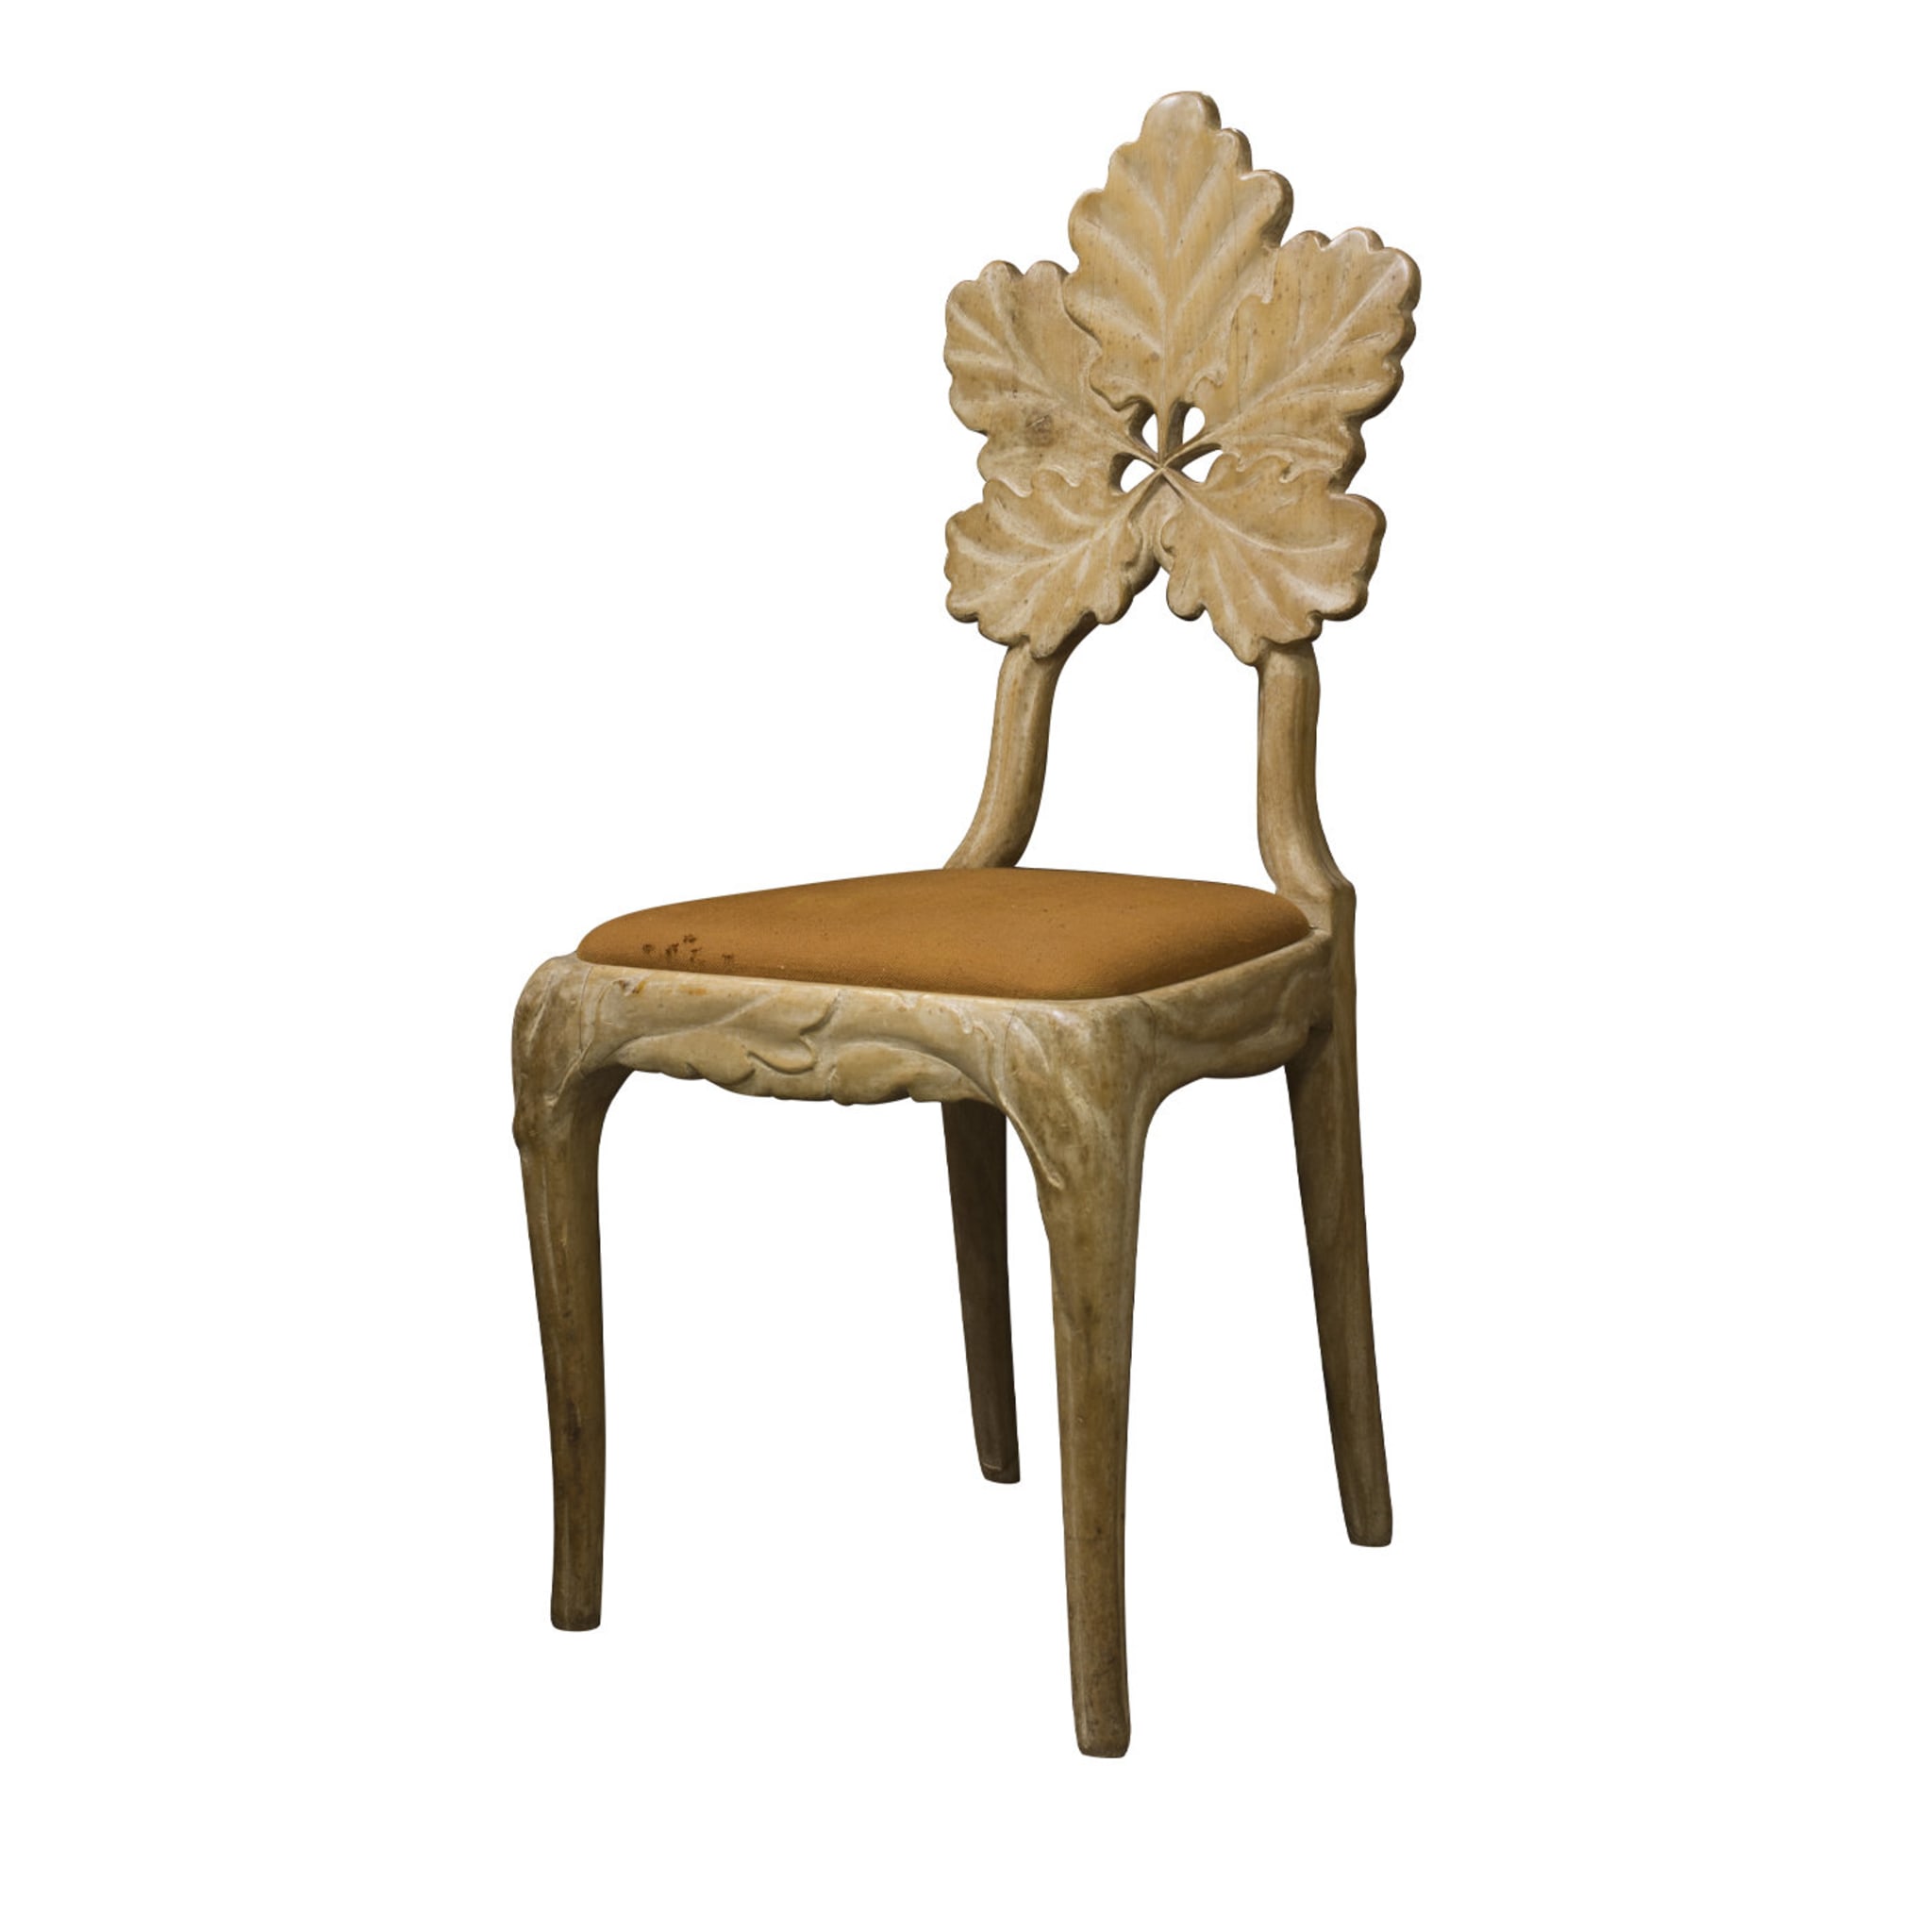 Oak Leaf Chair - Main view